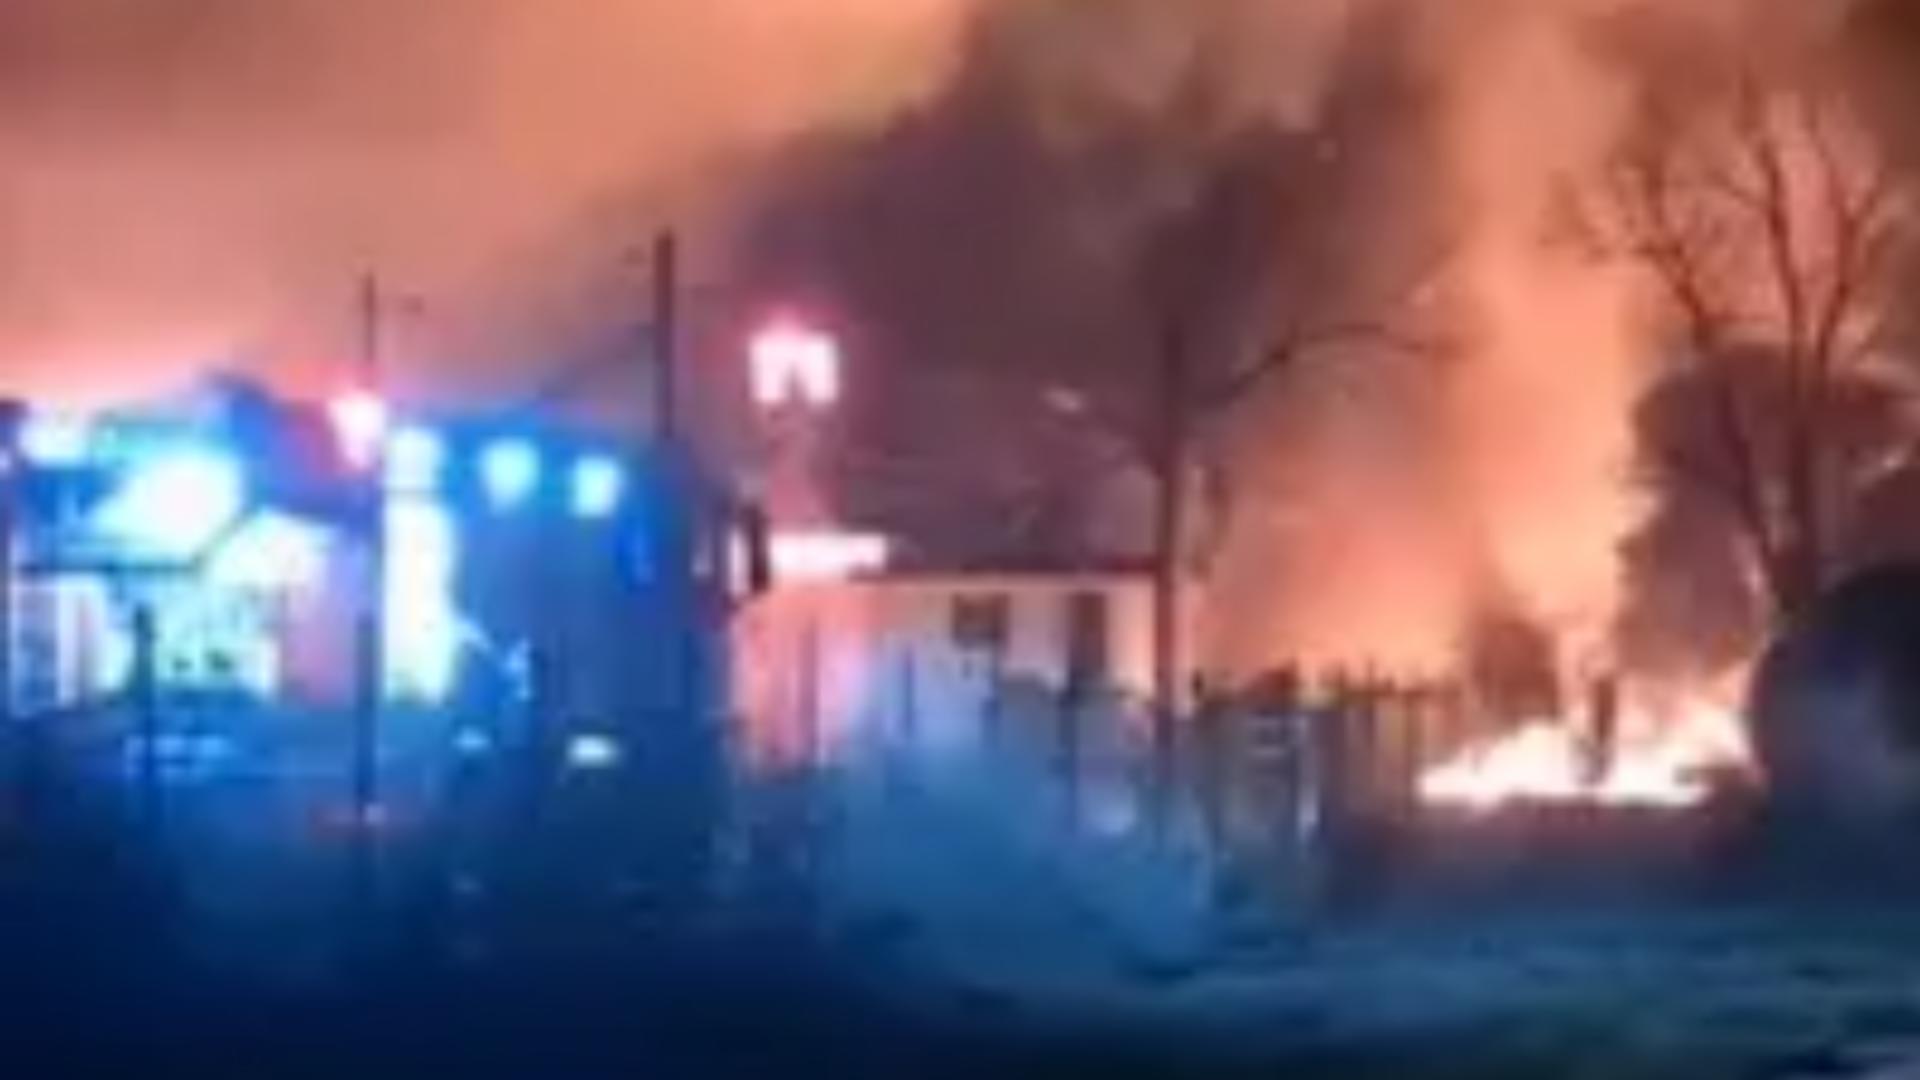 Un cunoscut restaurant din Câmpulung a fost cuprins de incendiu. Focul a afectat o terasă şi acoperişul clădirii/ Captură foto ziartopdearges.com